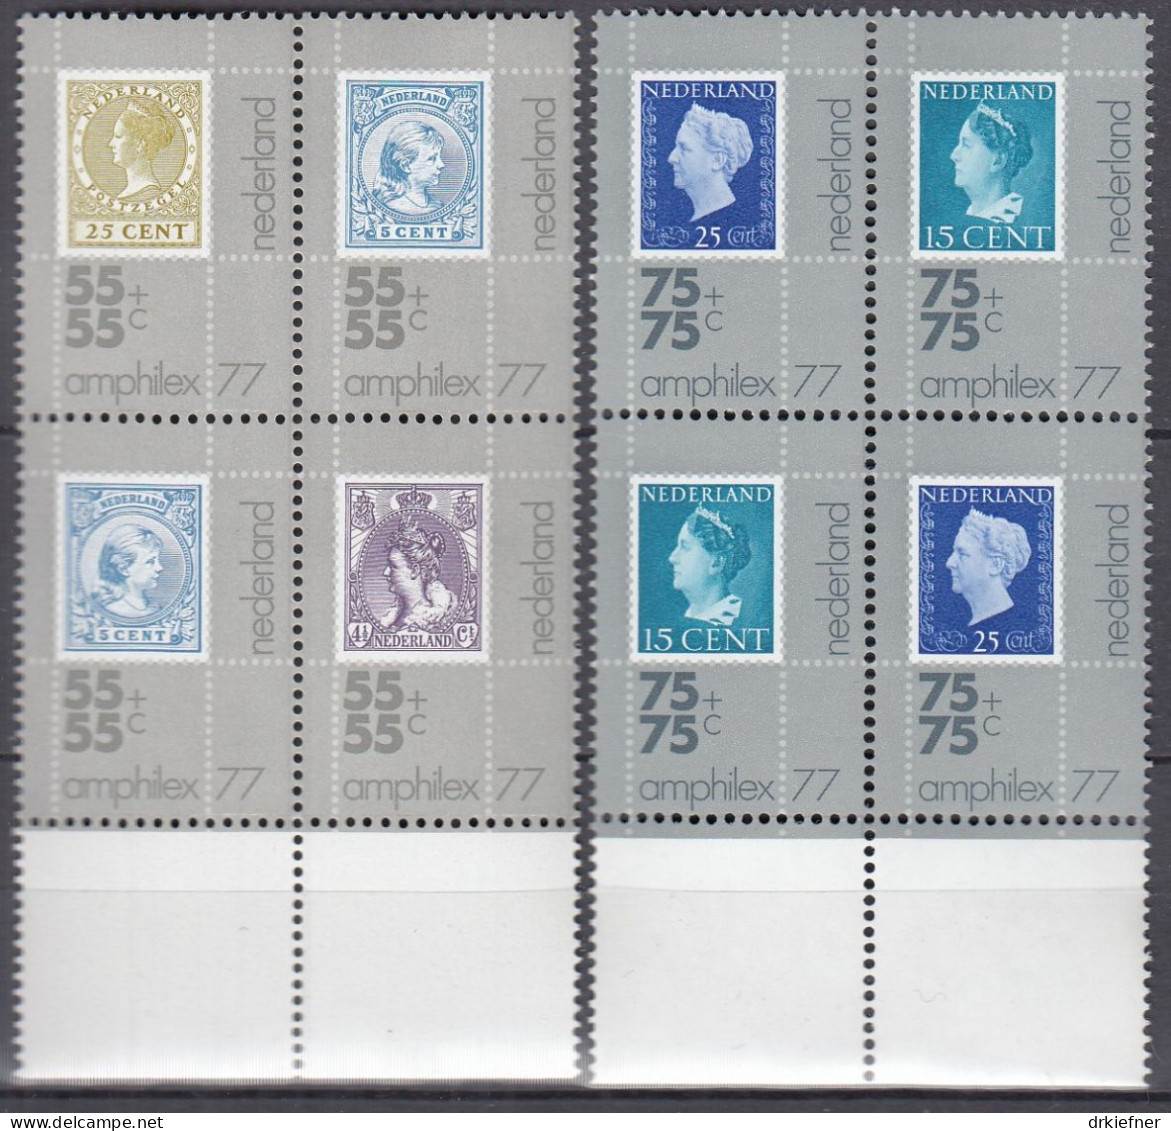 NIEDERLANDE  1083-1087, 4erBlock, Postfrisch **, Internationale Briefmarkenausstellung AMPHILEX ’77, 1976 - Ongebruikt